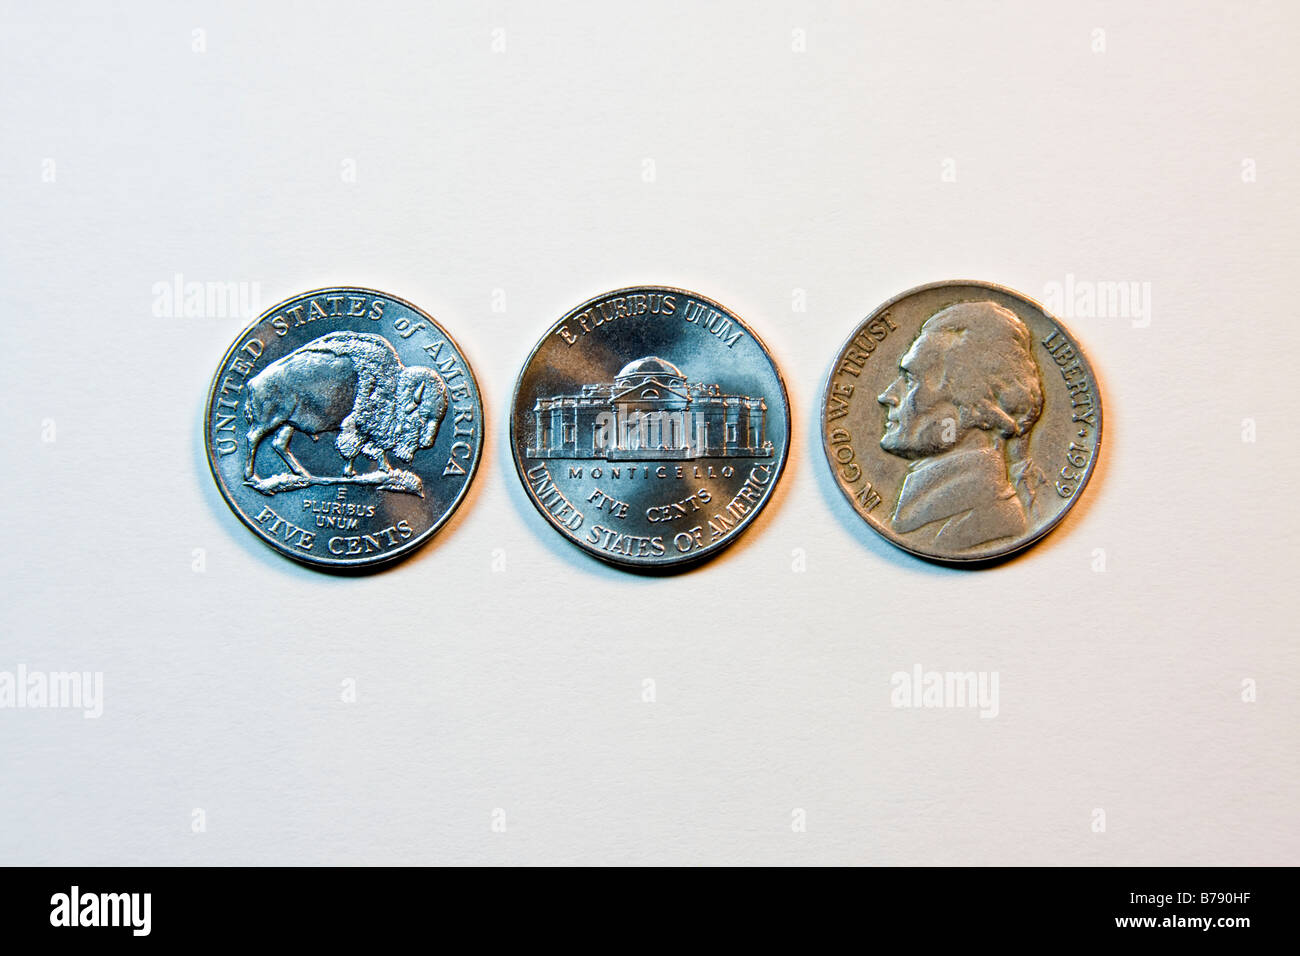 US-Währung.  Drei Nickelmünzen.  Buffalo zurück, Monticello und 1939 Nickel vergleichen Design. Stockfoto